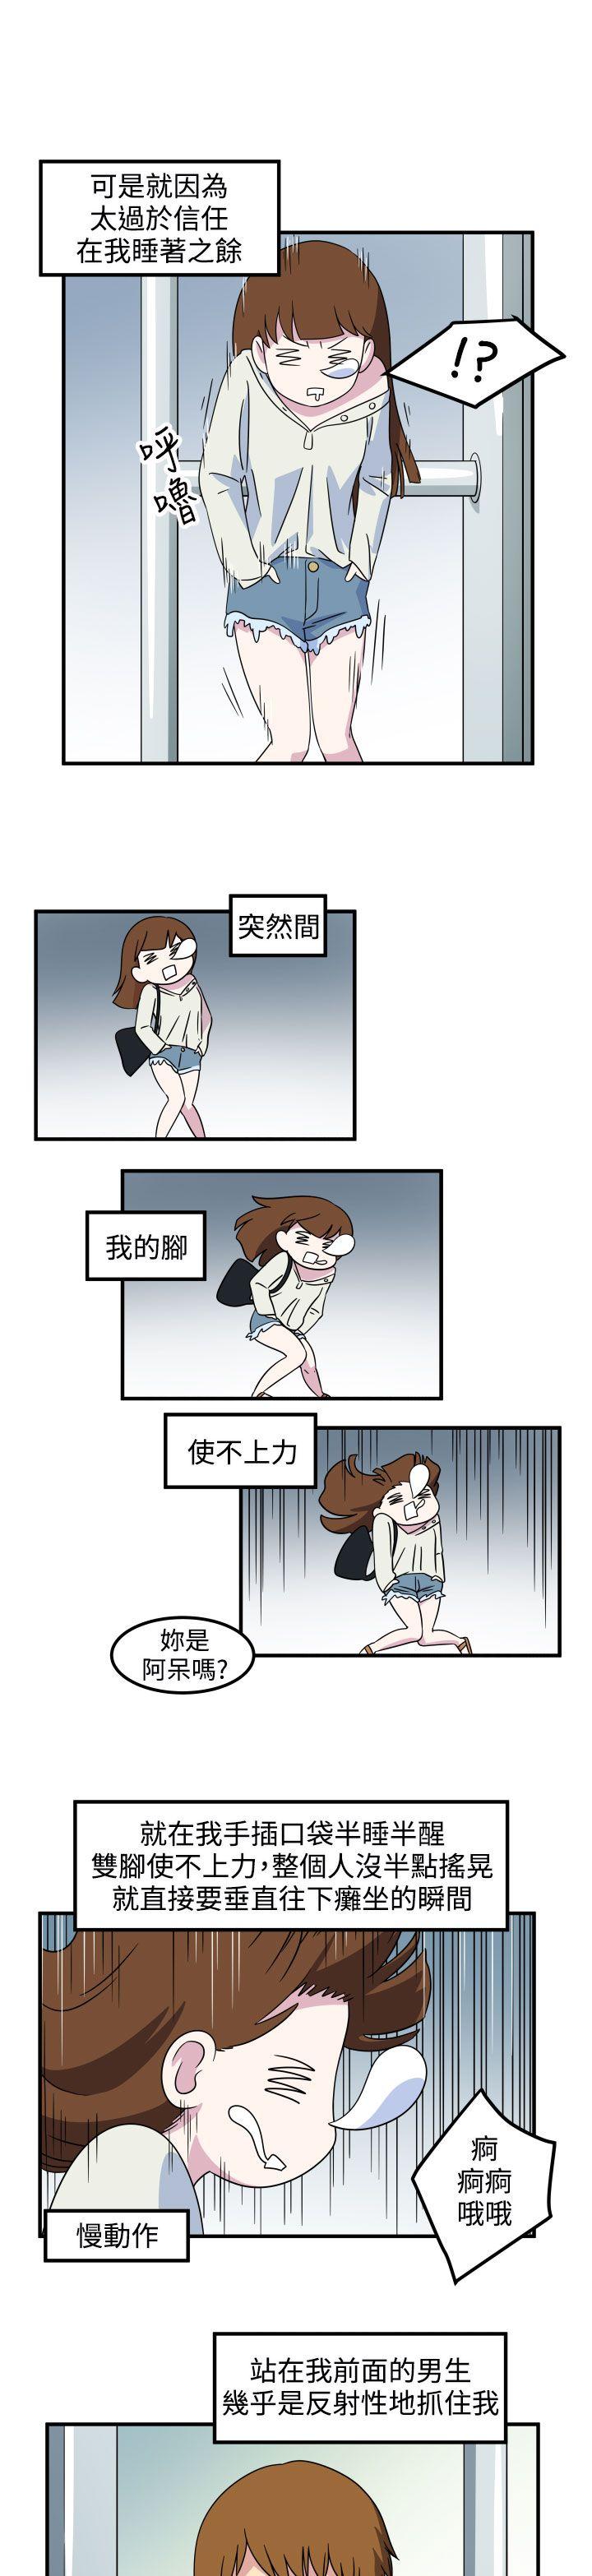 韩国污漫画 腹黑女的異想世界 第18话 3